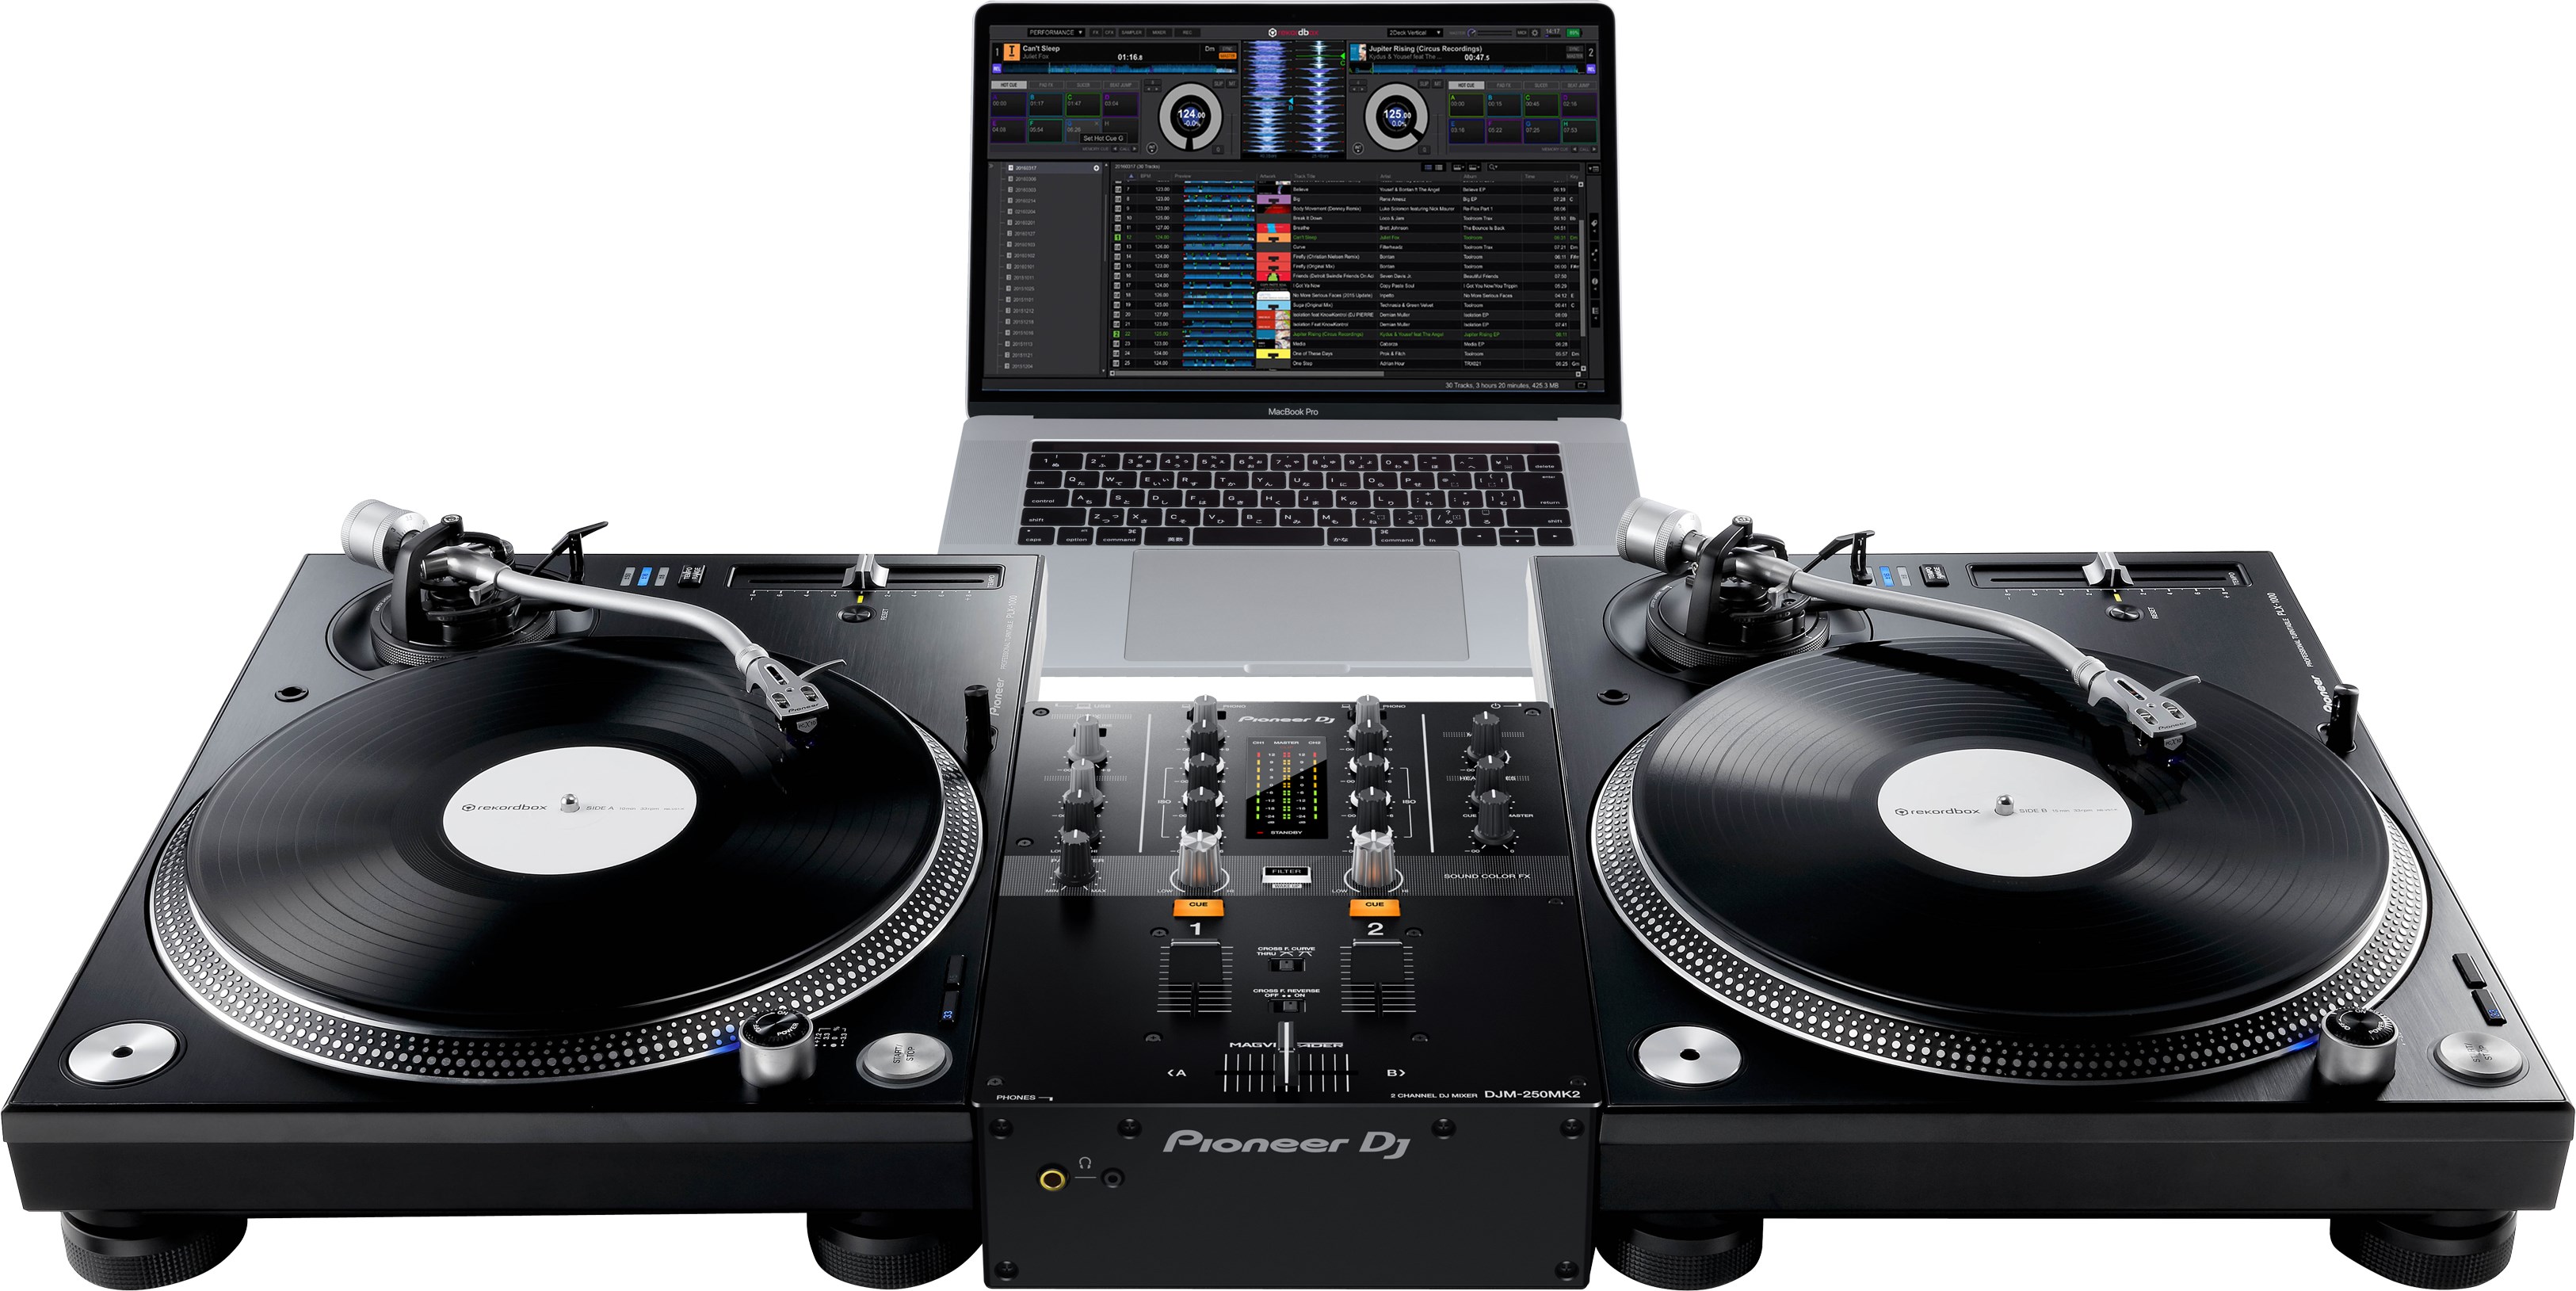 Pioneer Dj Djm-250mk2 - DJ mixer - Variation 2